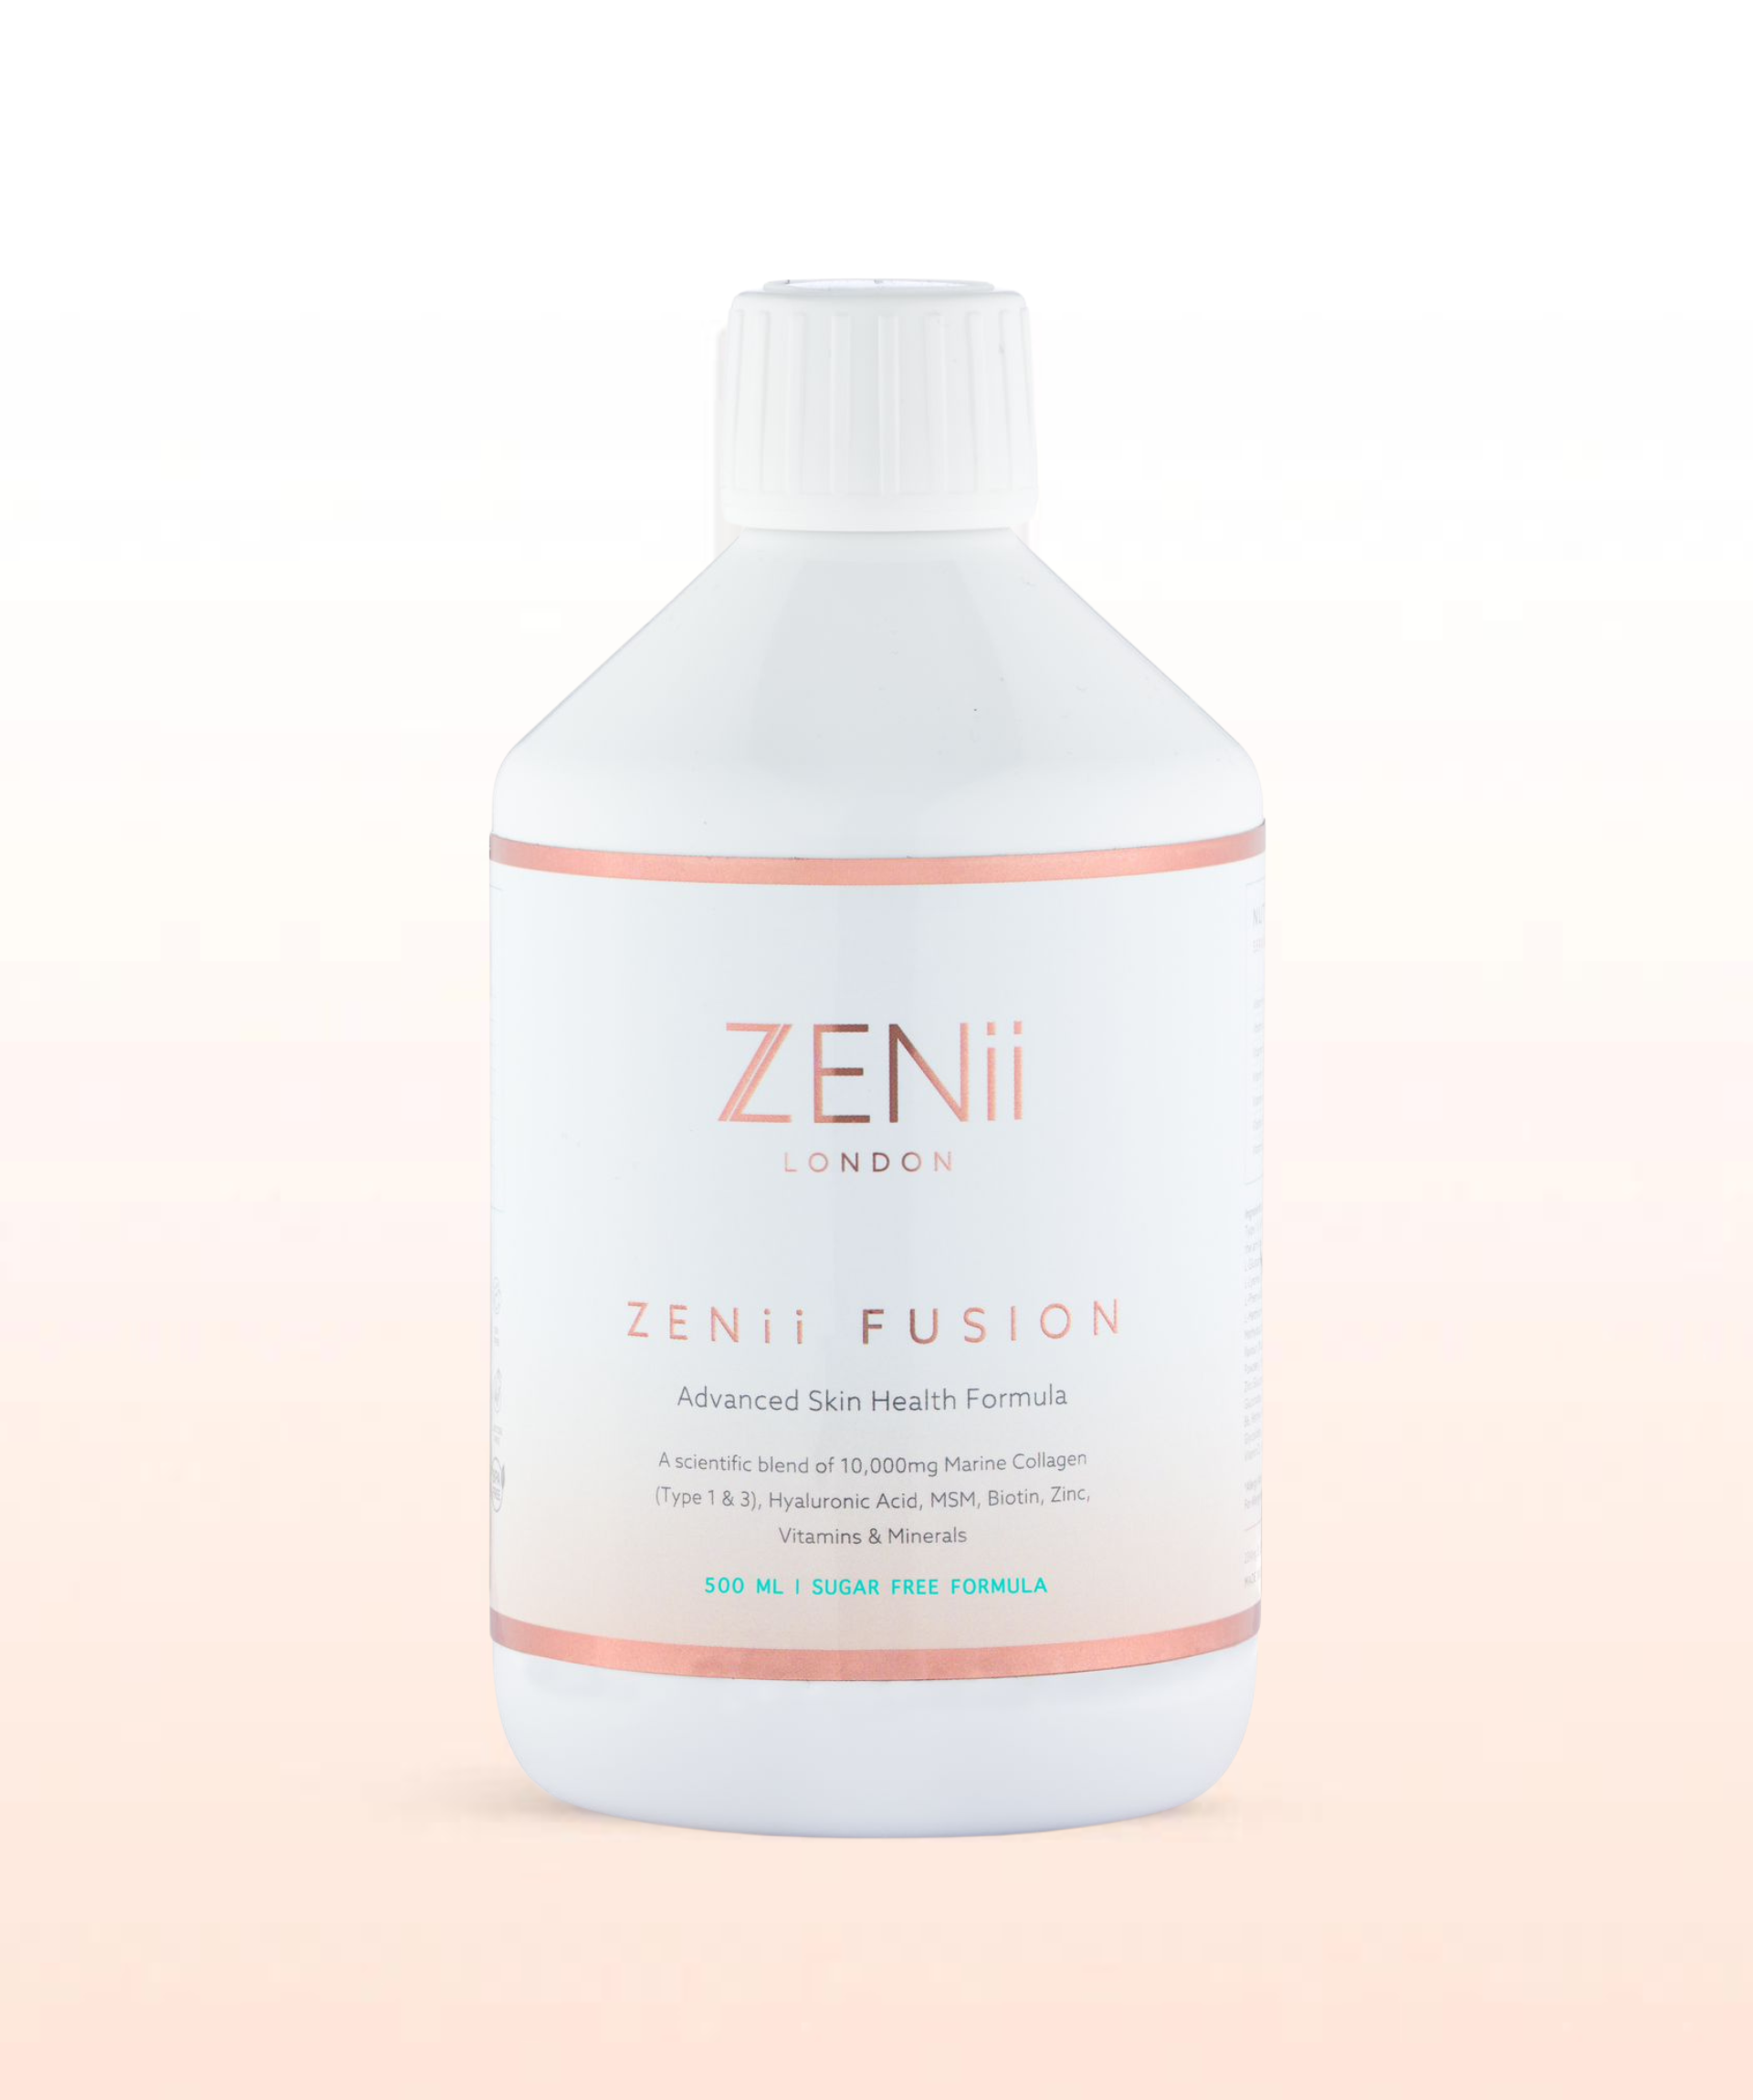 ZENii Fusion (Previously Skin Fusion)